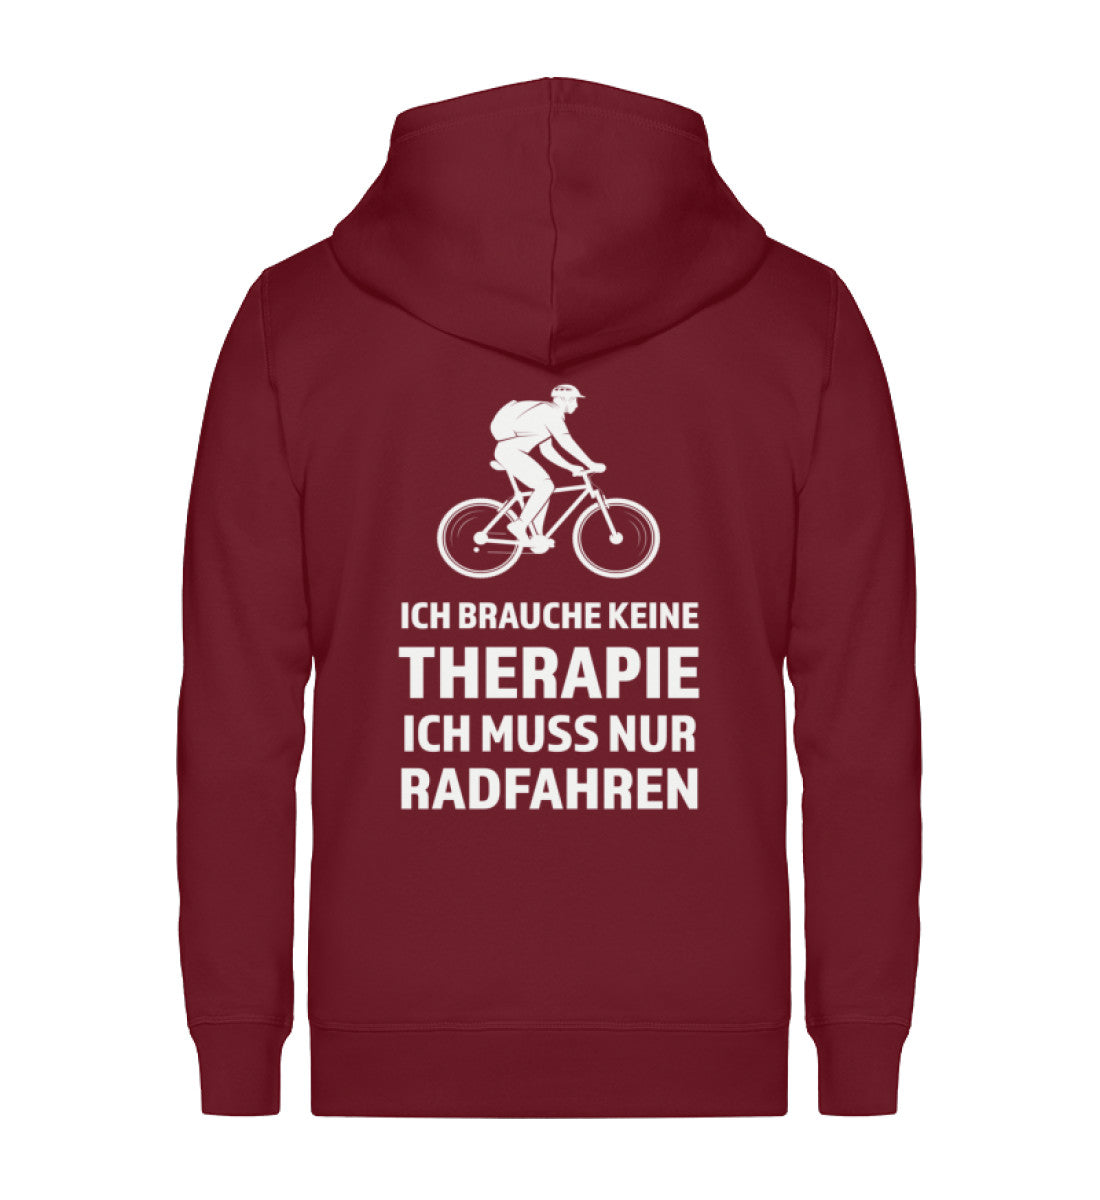 Therapie Ich muss nur Radfahren - Unisex Premium Organic Sweatjacke fahrrad Weinrot